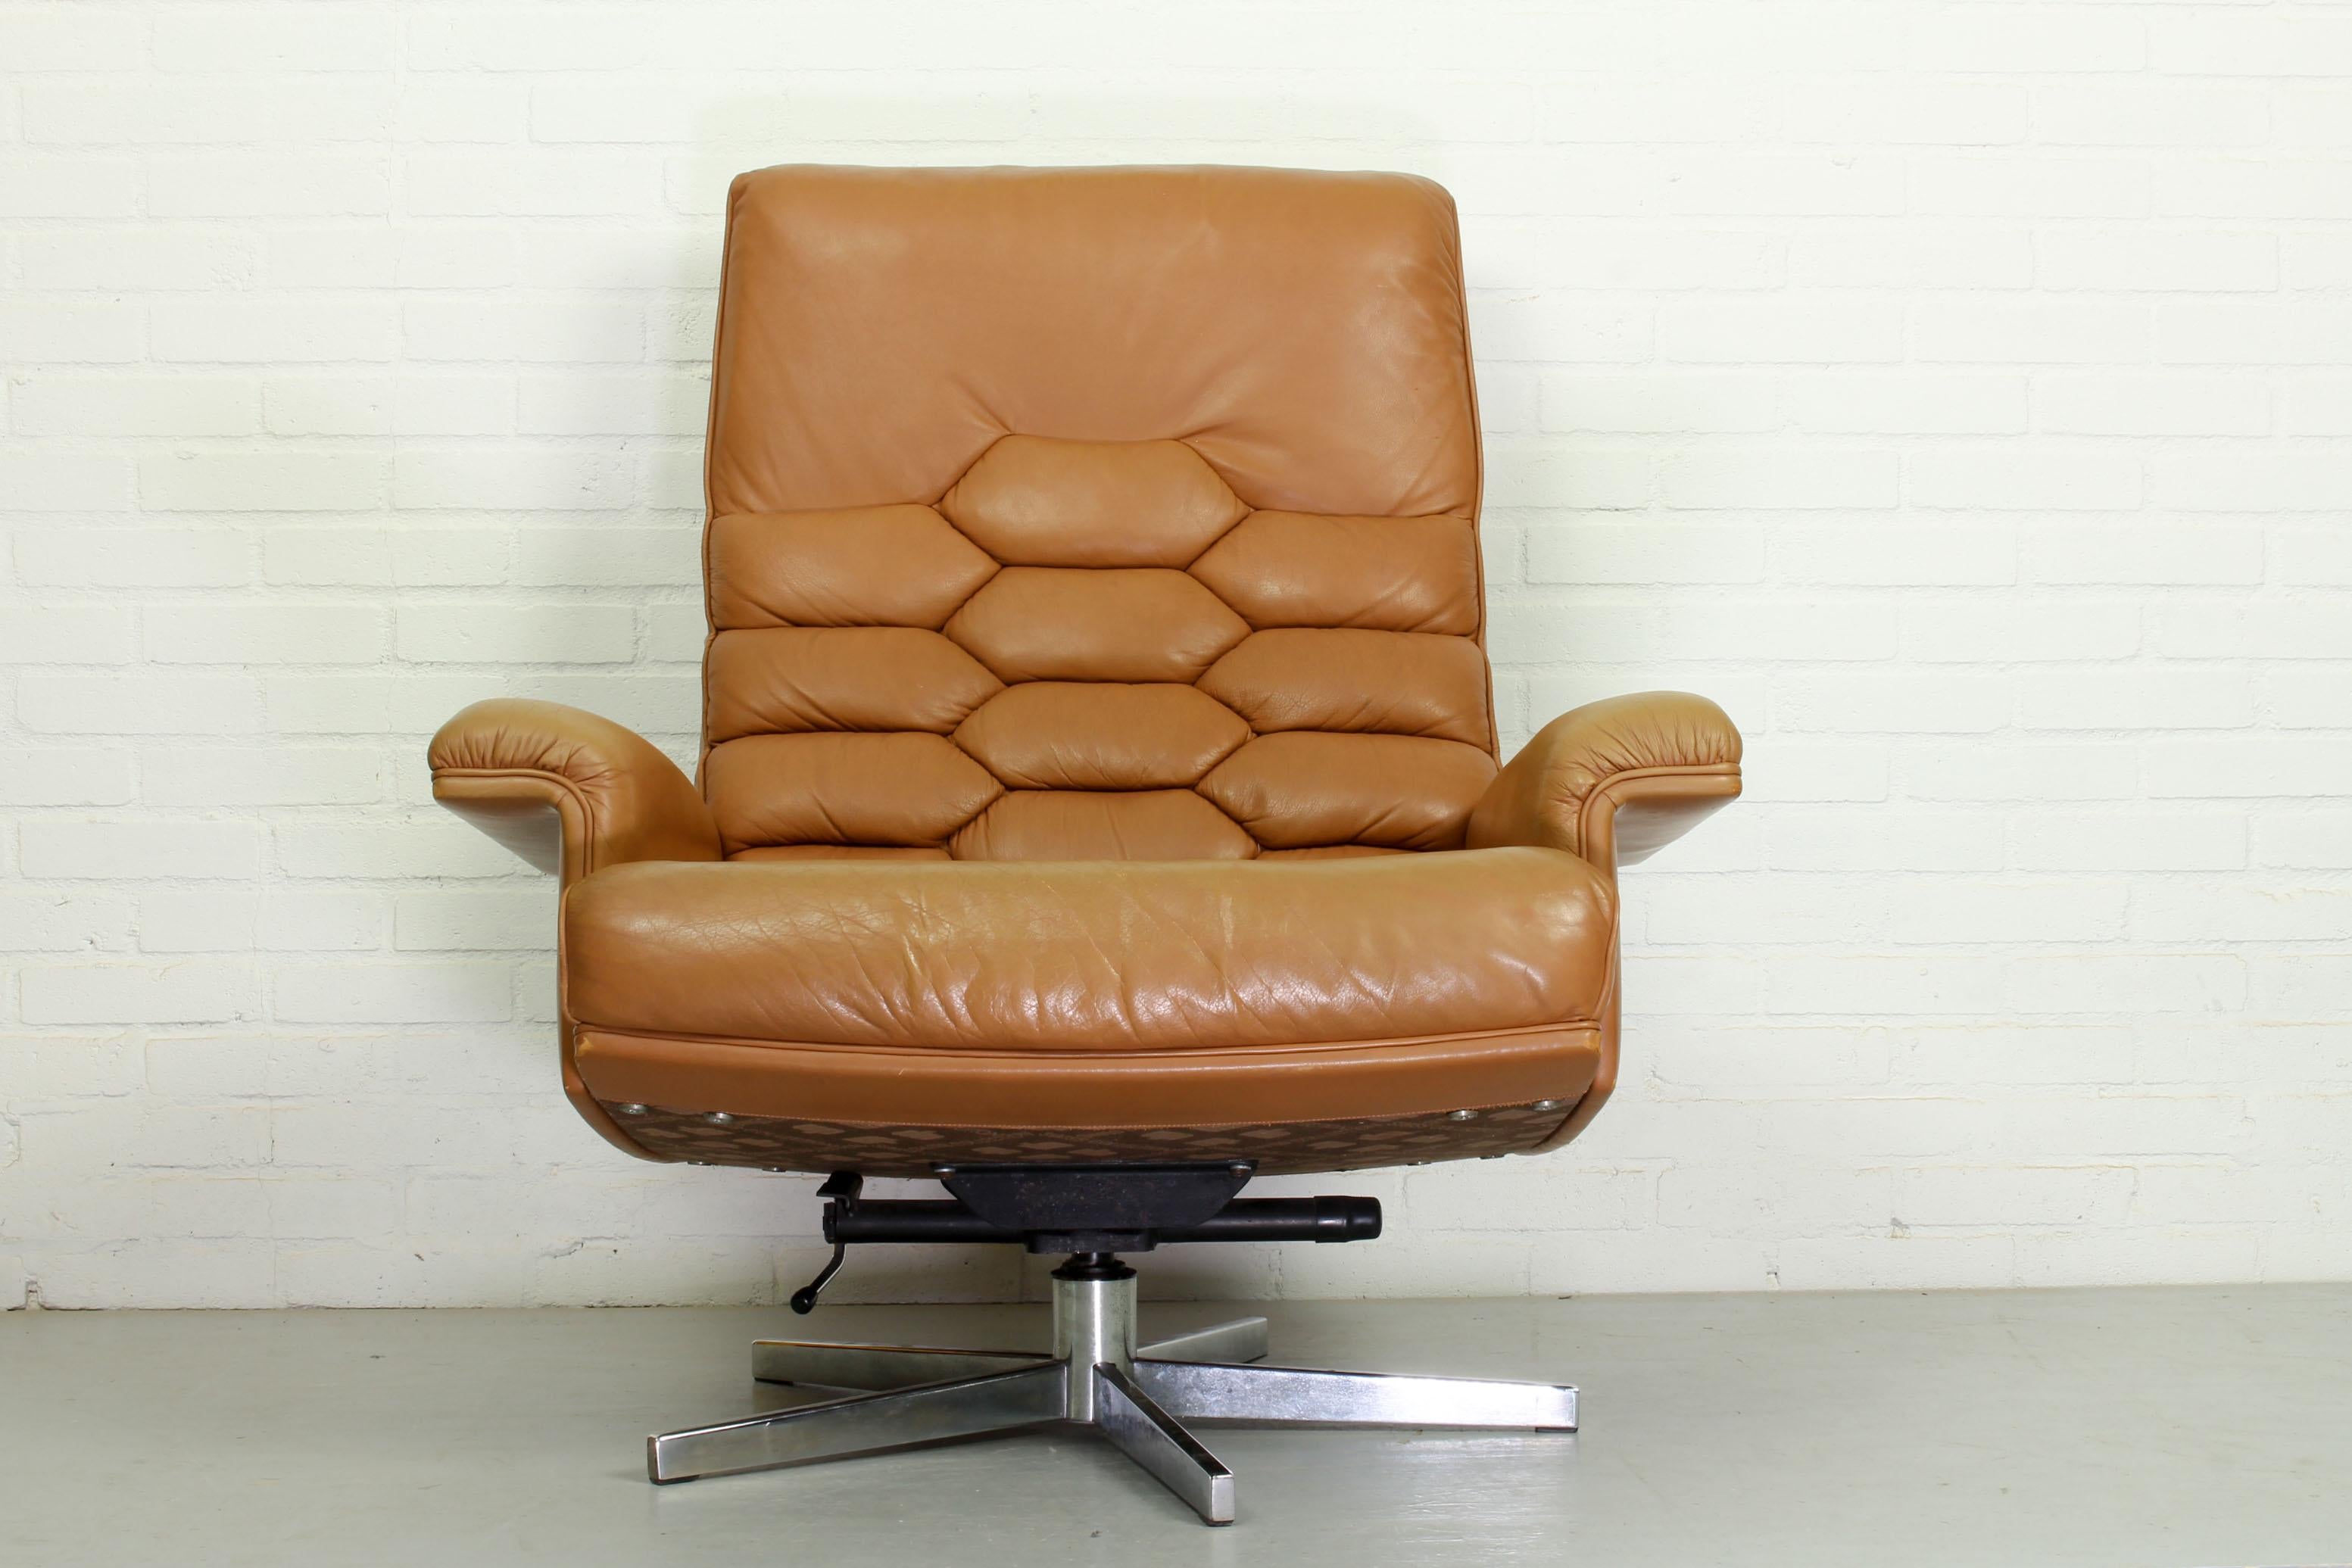 Einer der schönsten Entwürfe von Robert Haussmann für De Sede (Schweiz) ist sicherlich dieser Loungesessel DS 35. Mit seinem originalen, mit Schaumstoff und Daunen gefüllten Sitz und seiner Rückenlehne aus cognacfarbenem Leder ist dies einer der